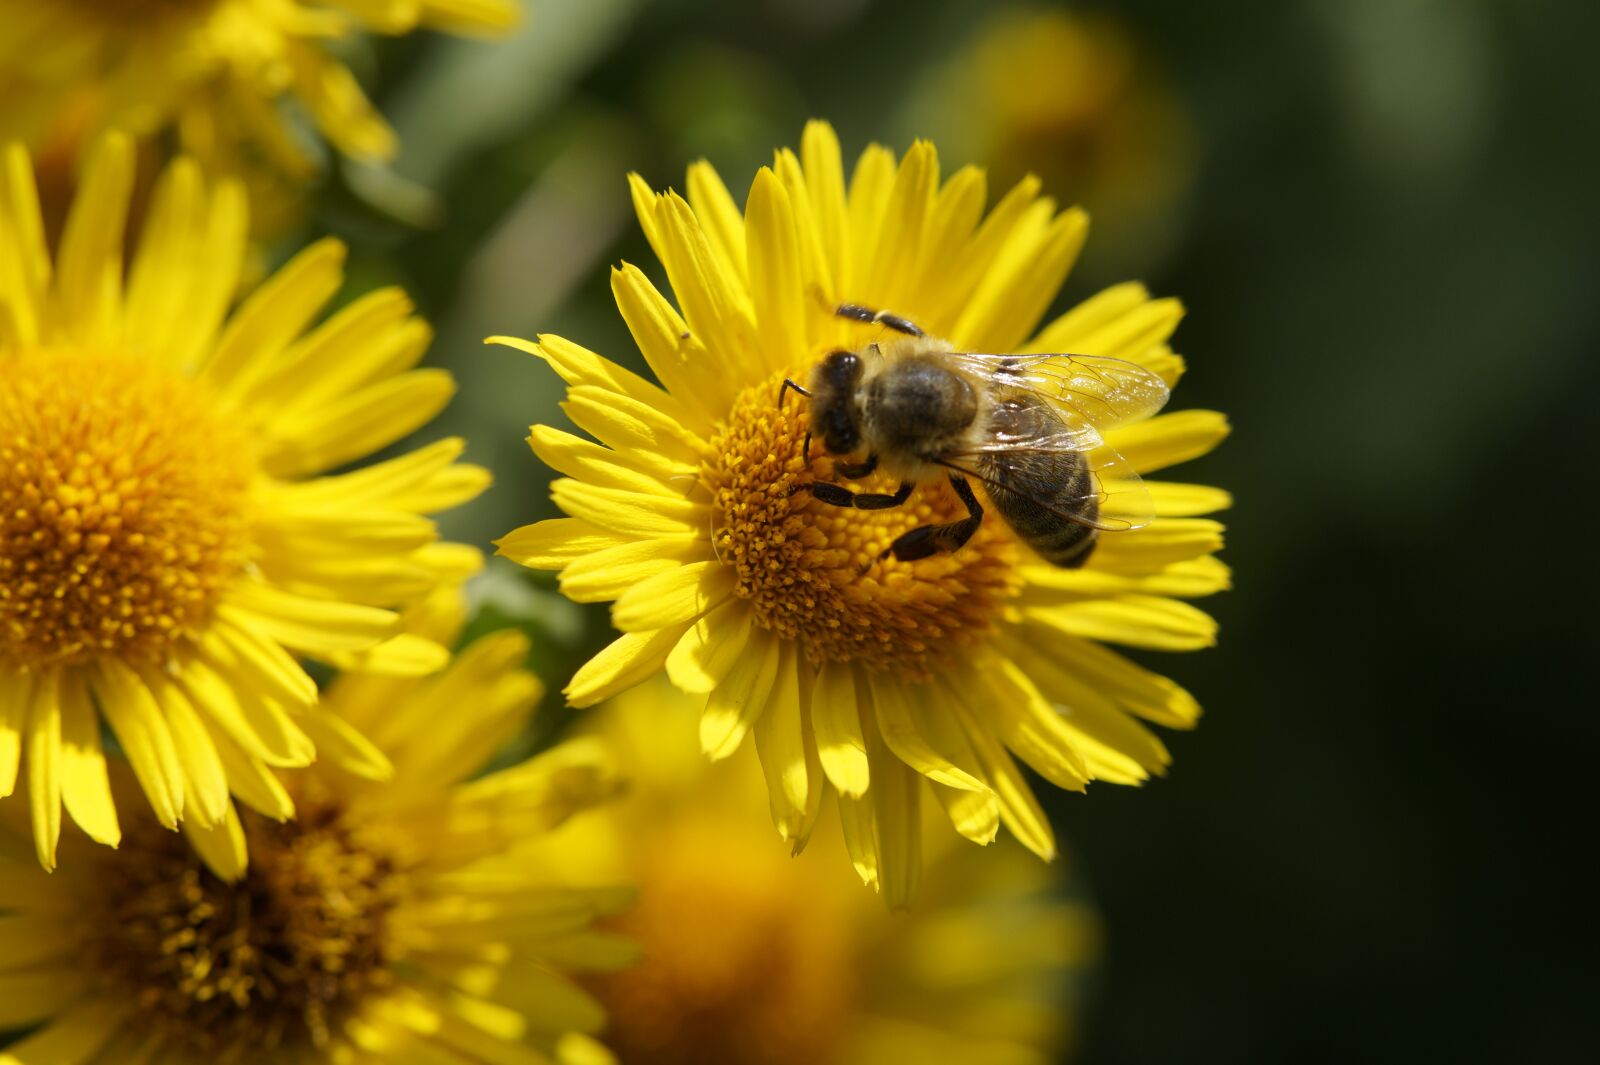 Sony SLT-A58 + Tamron SP AF 60mm F2 Di II LD IF Macro sample photo. Bee, nectar, pollen photography